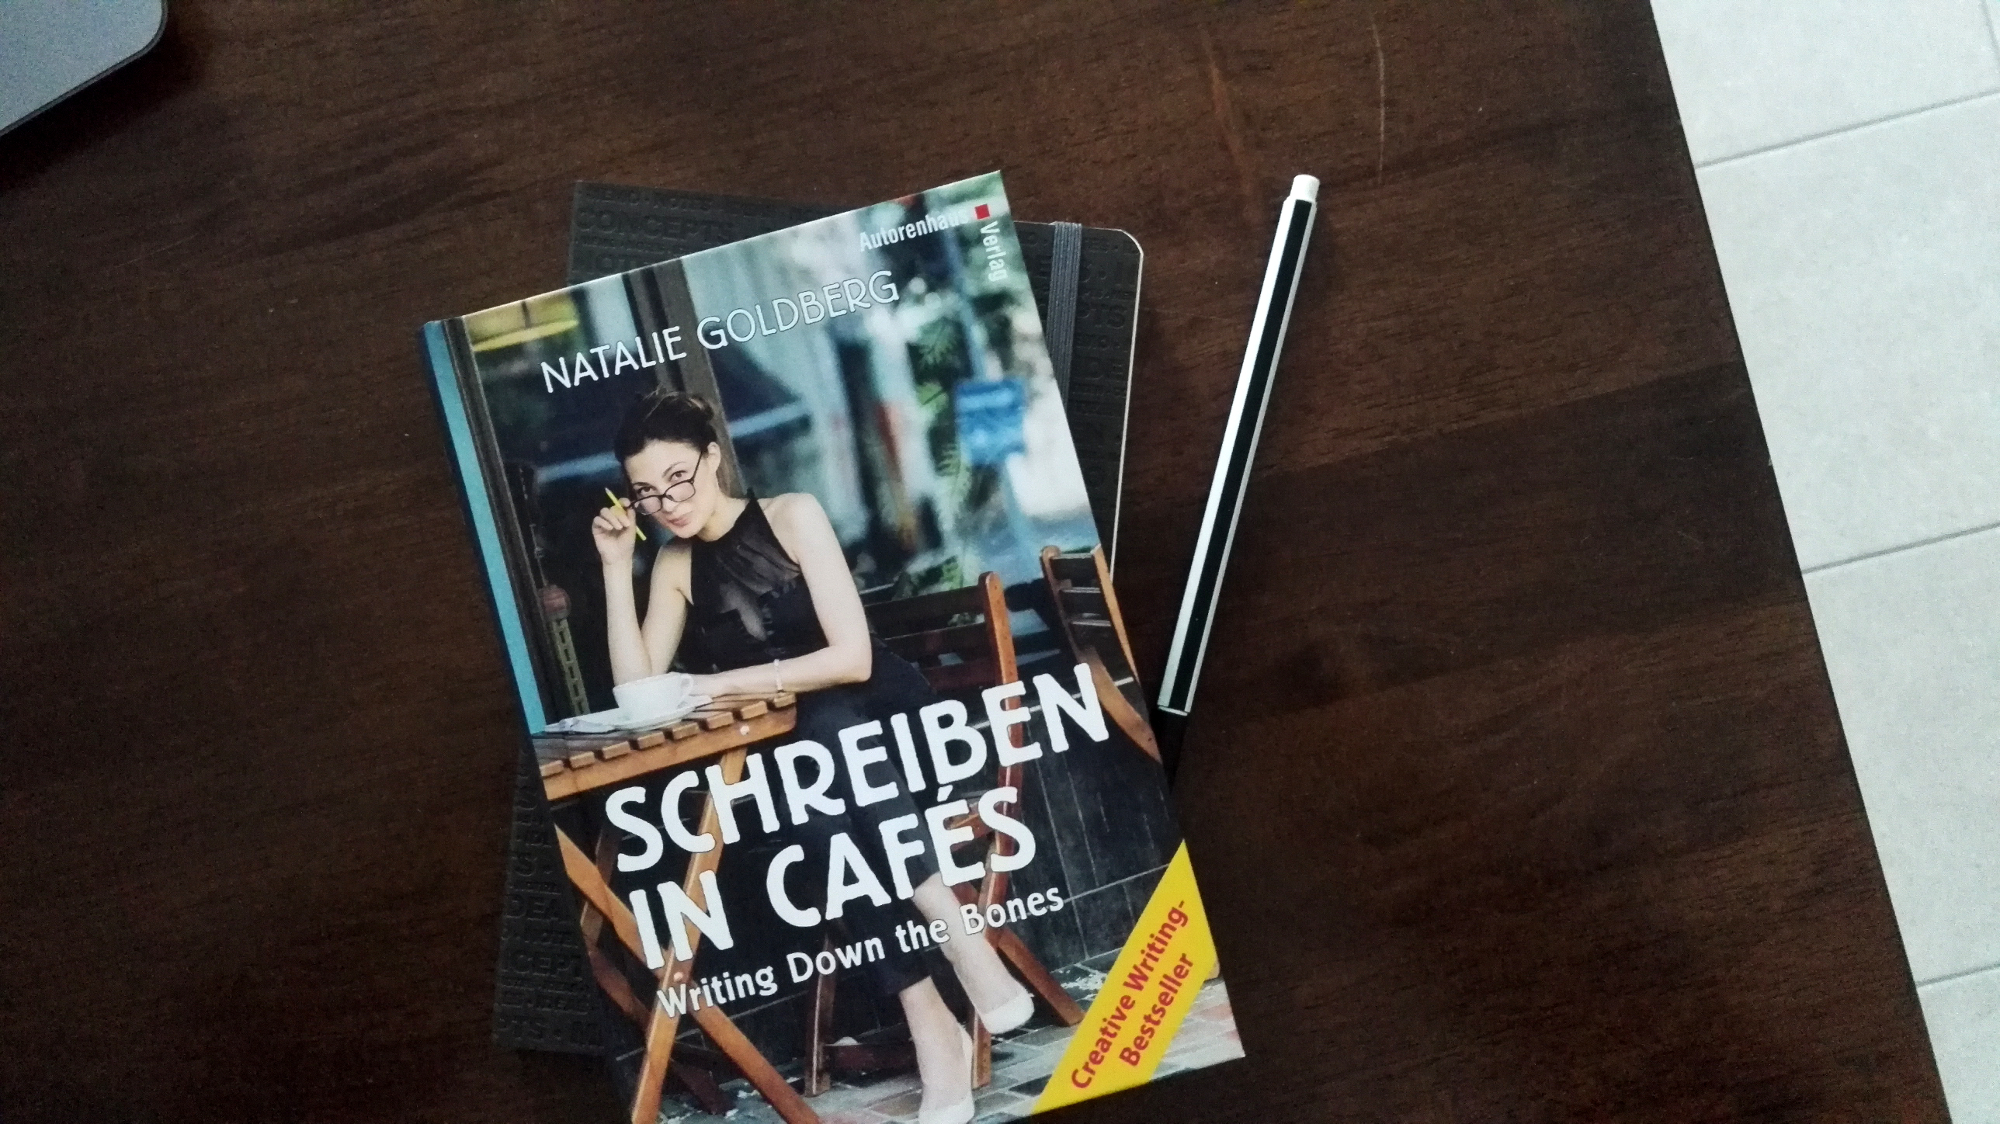 Natalie Goldberg, Schreiben in Cafés